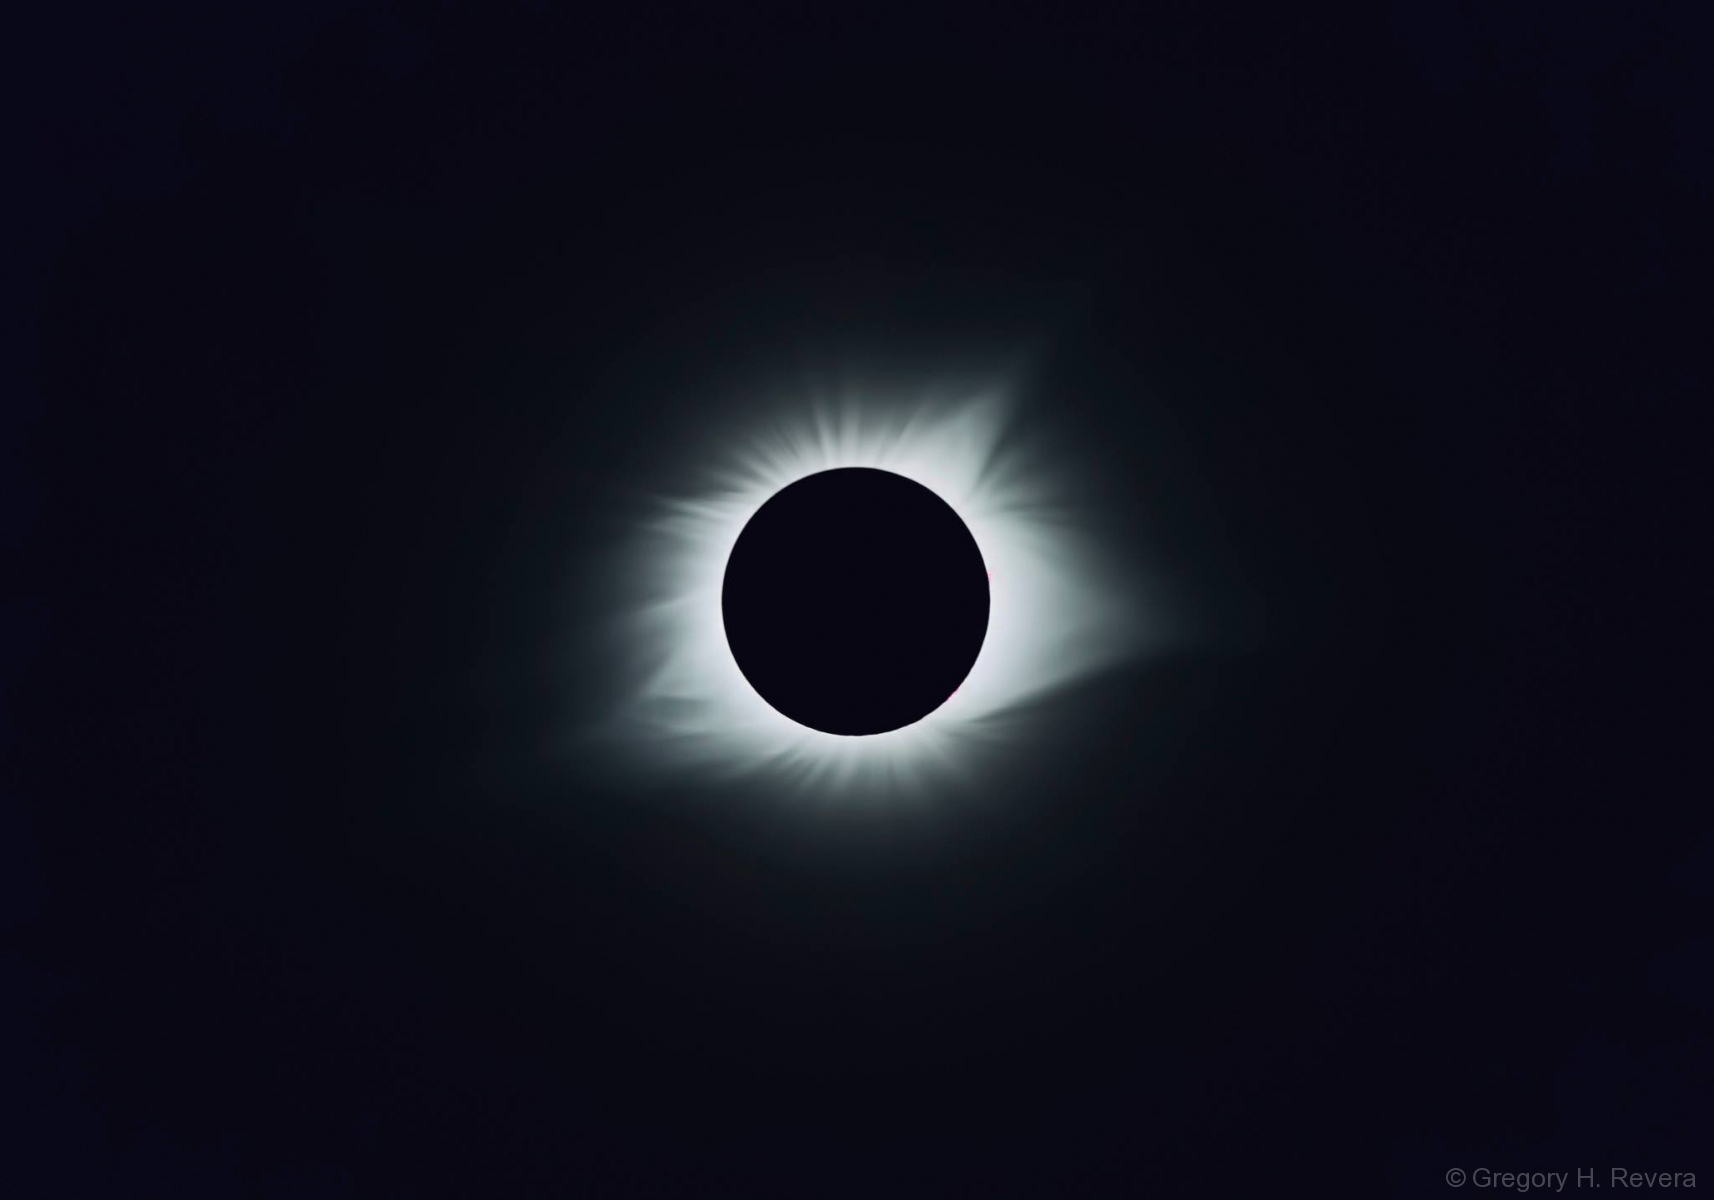 2017 Eclipse